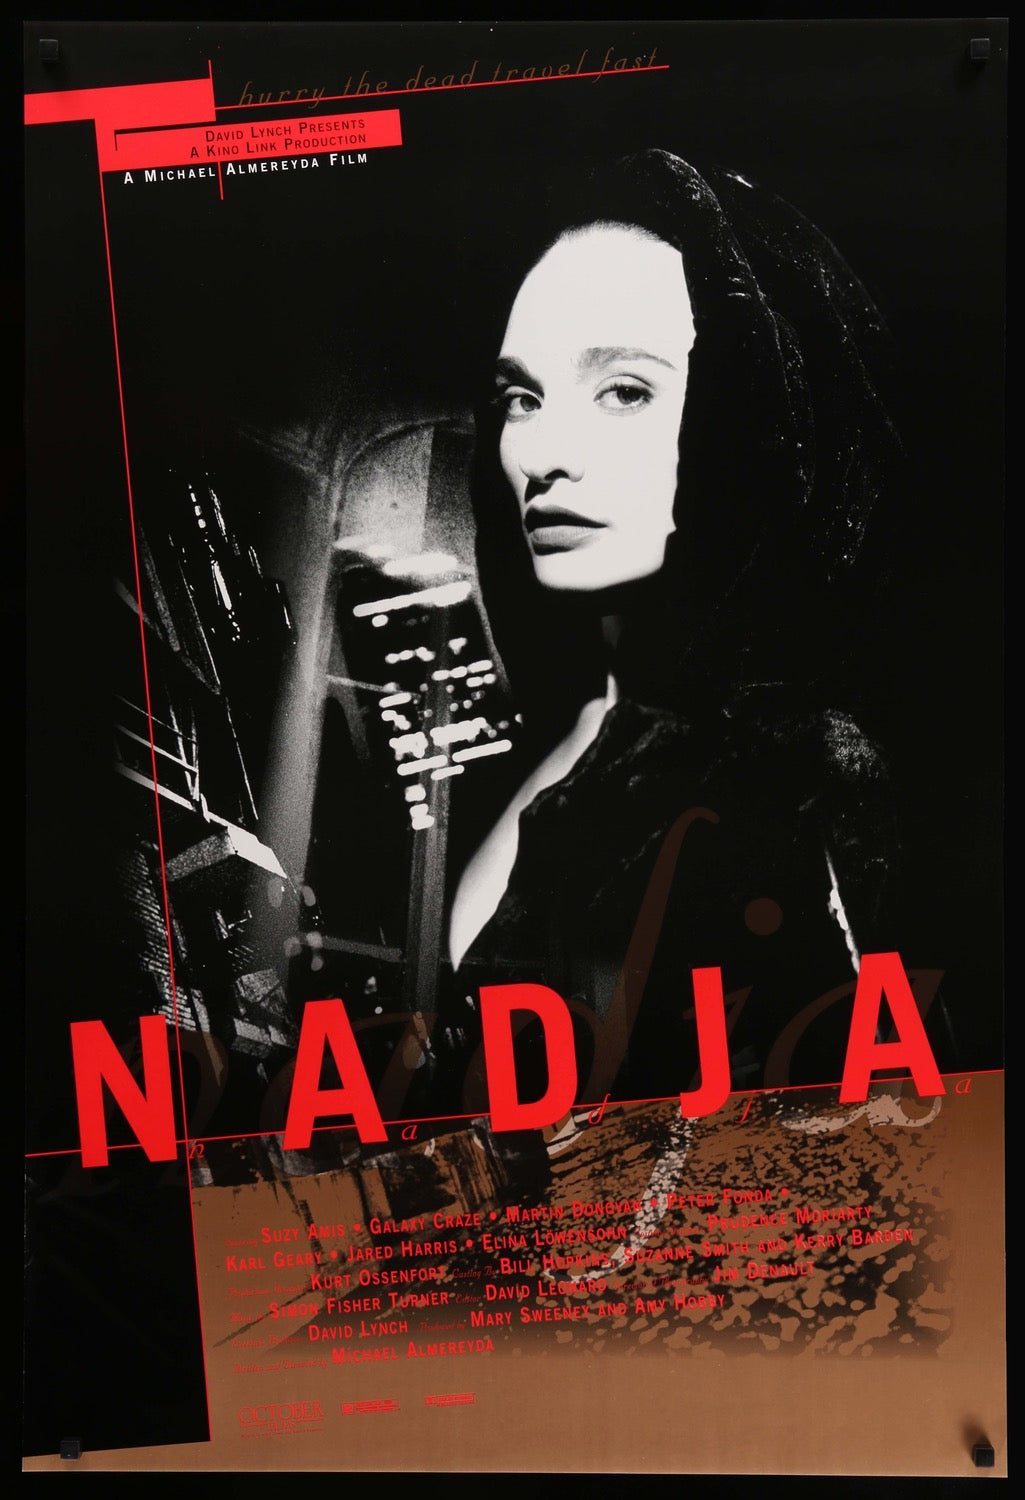 Nadja (1994) original movie poster for sale at Original Film Art